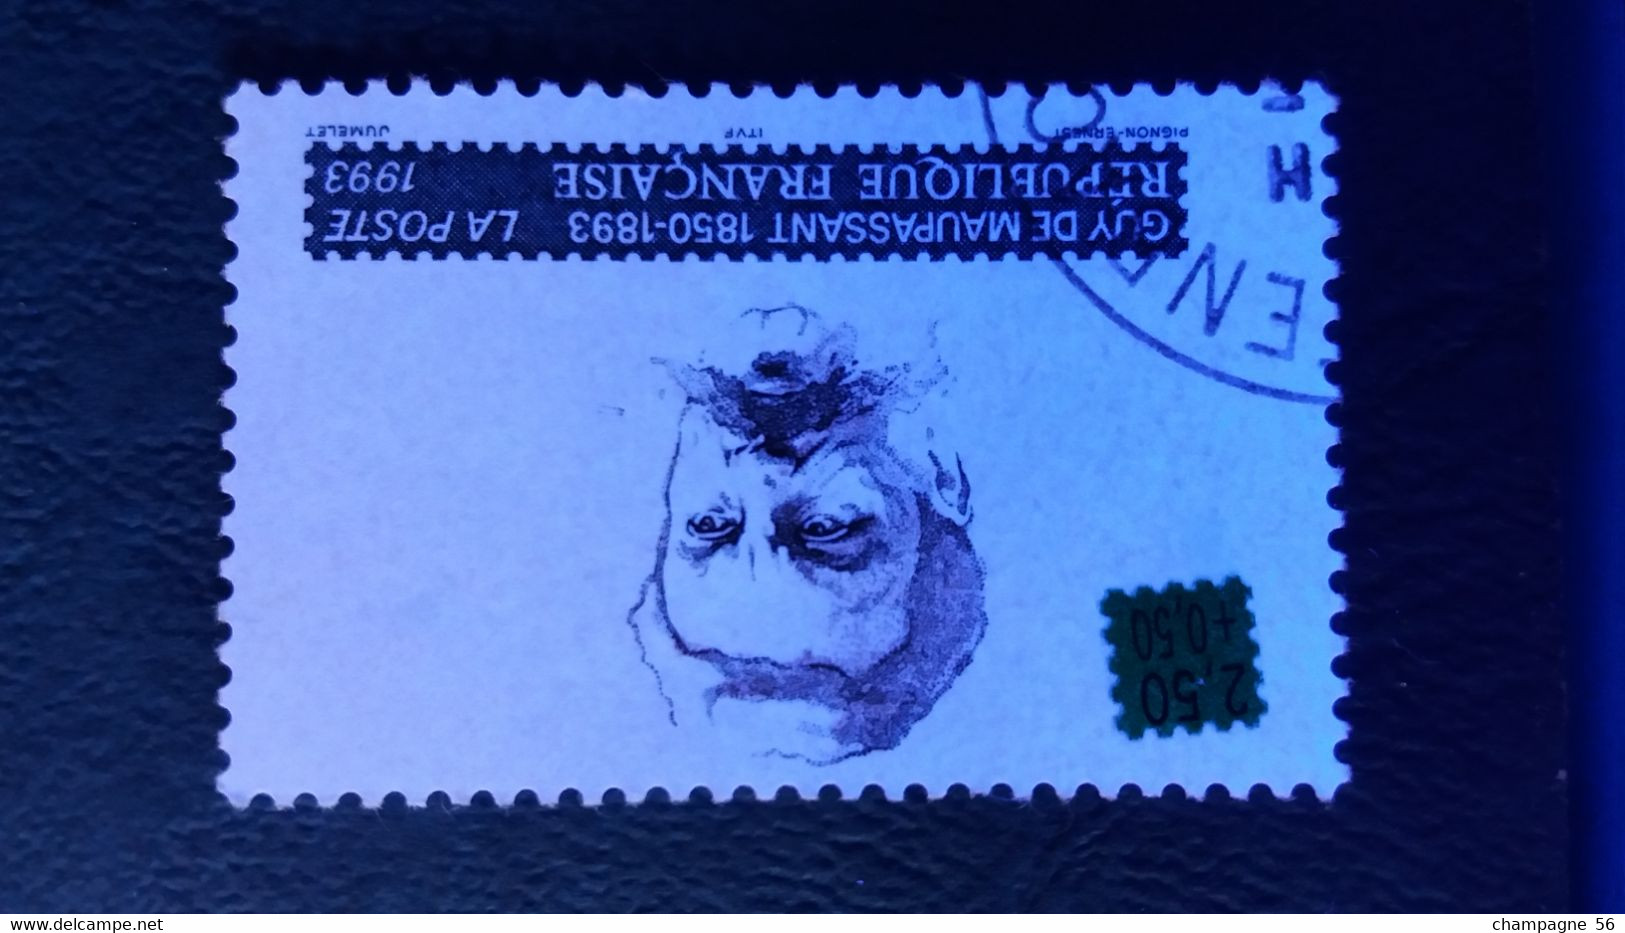 VARIETES FRANCE 1993  N° 2799  OBLITERE CHEVEUX 2,50+0,50 DEPLACER  / LAMPE U.V. / SCANNE 3 PAS A VENDRE - Used Stamps